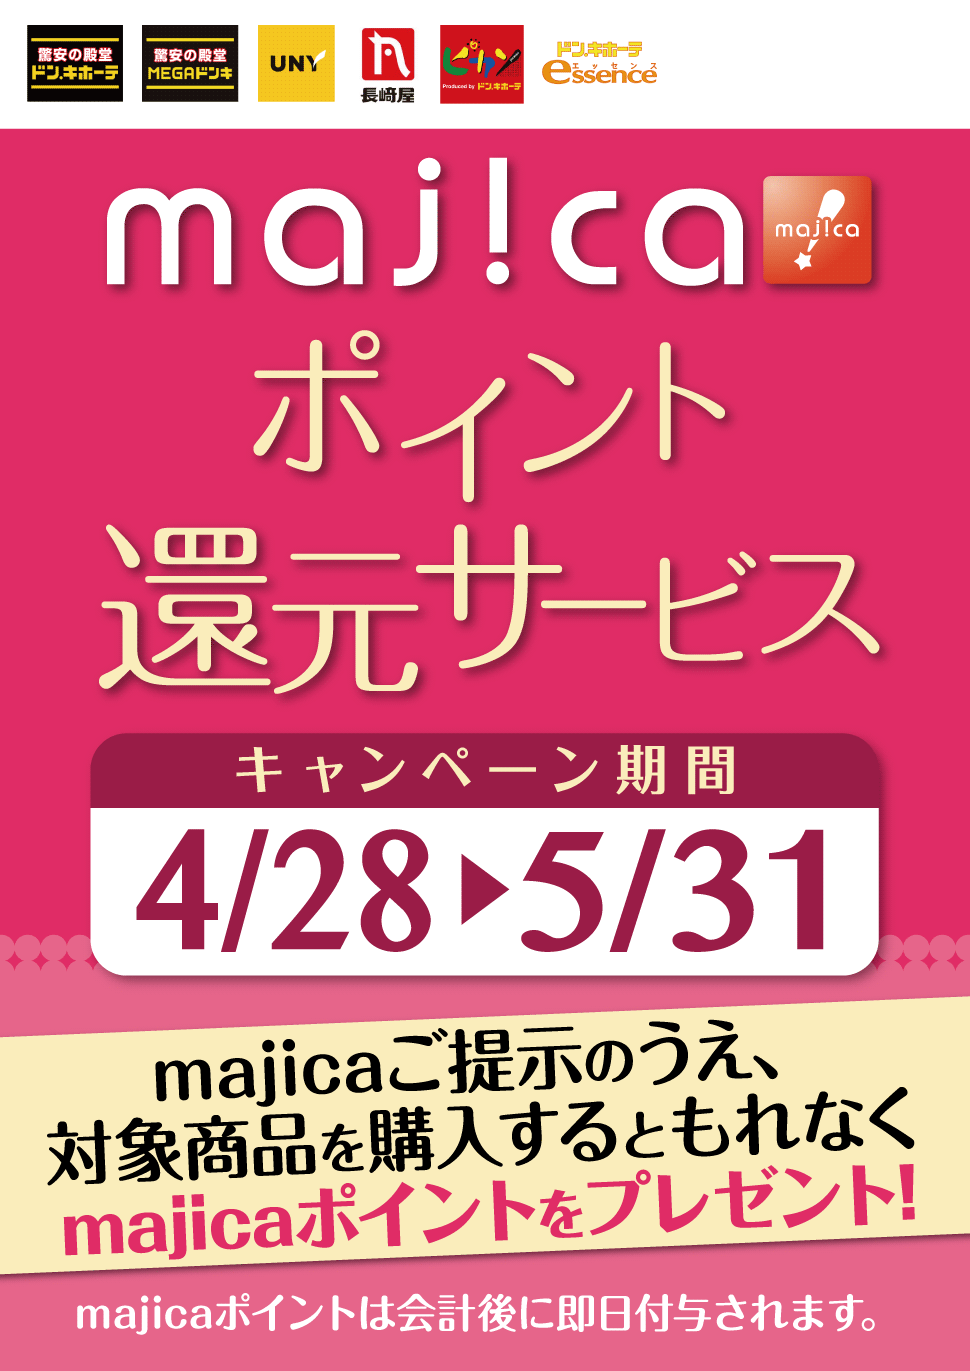 majicaポイント還元サービス「フレグランスキャンぺーン」